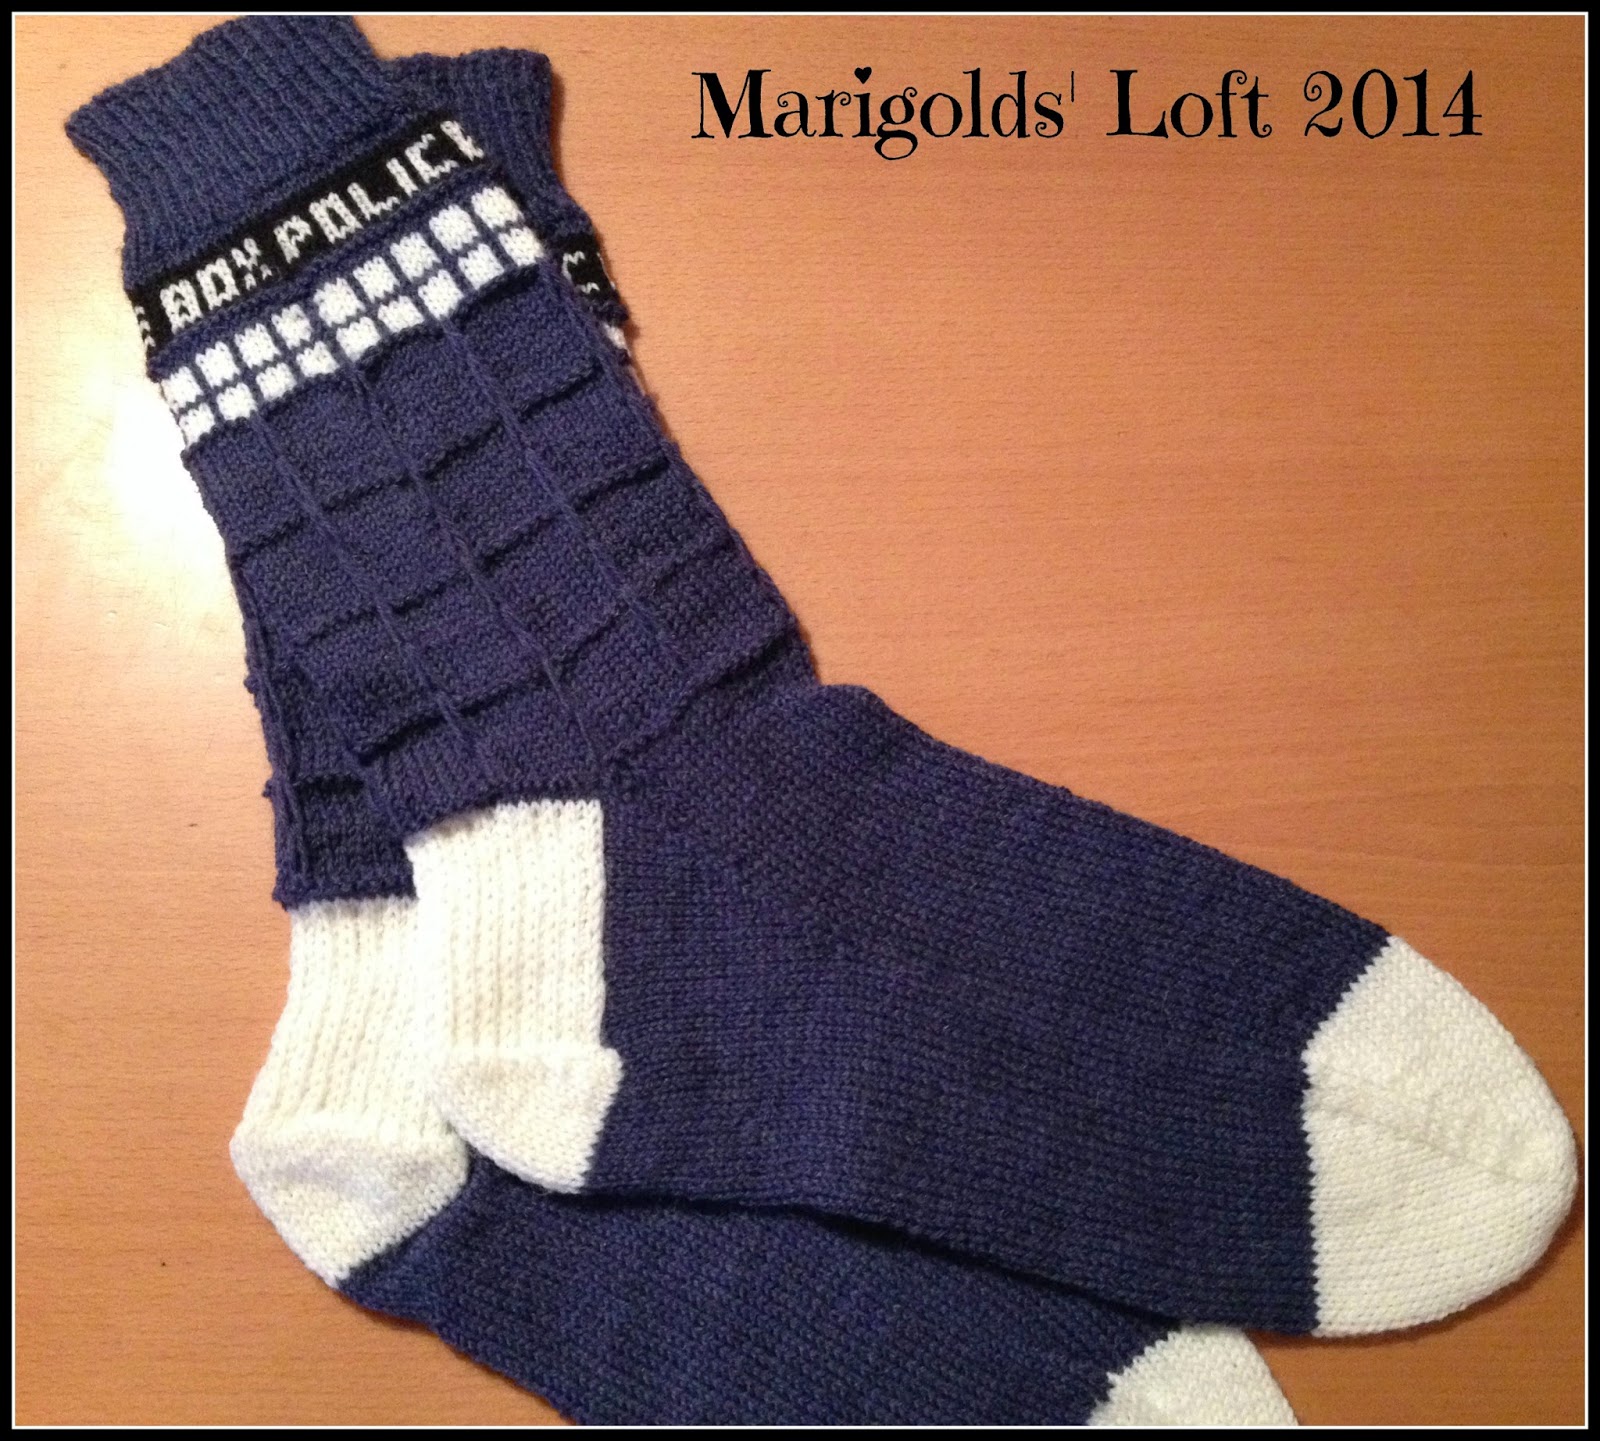 tardis socks for men